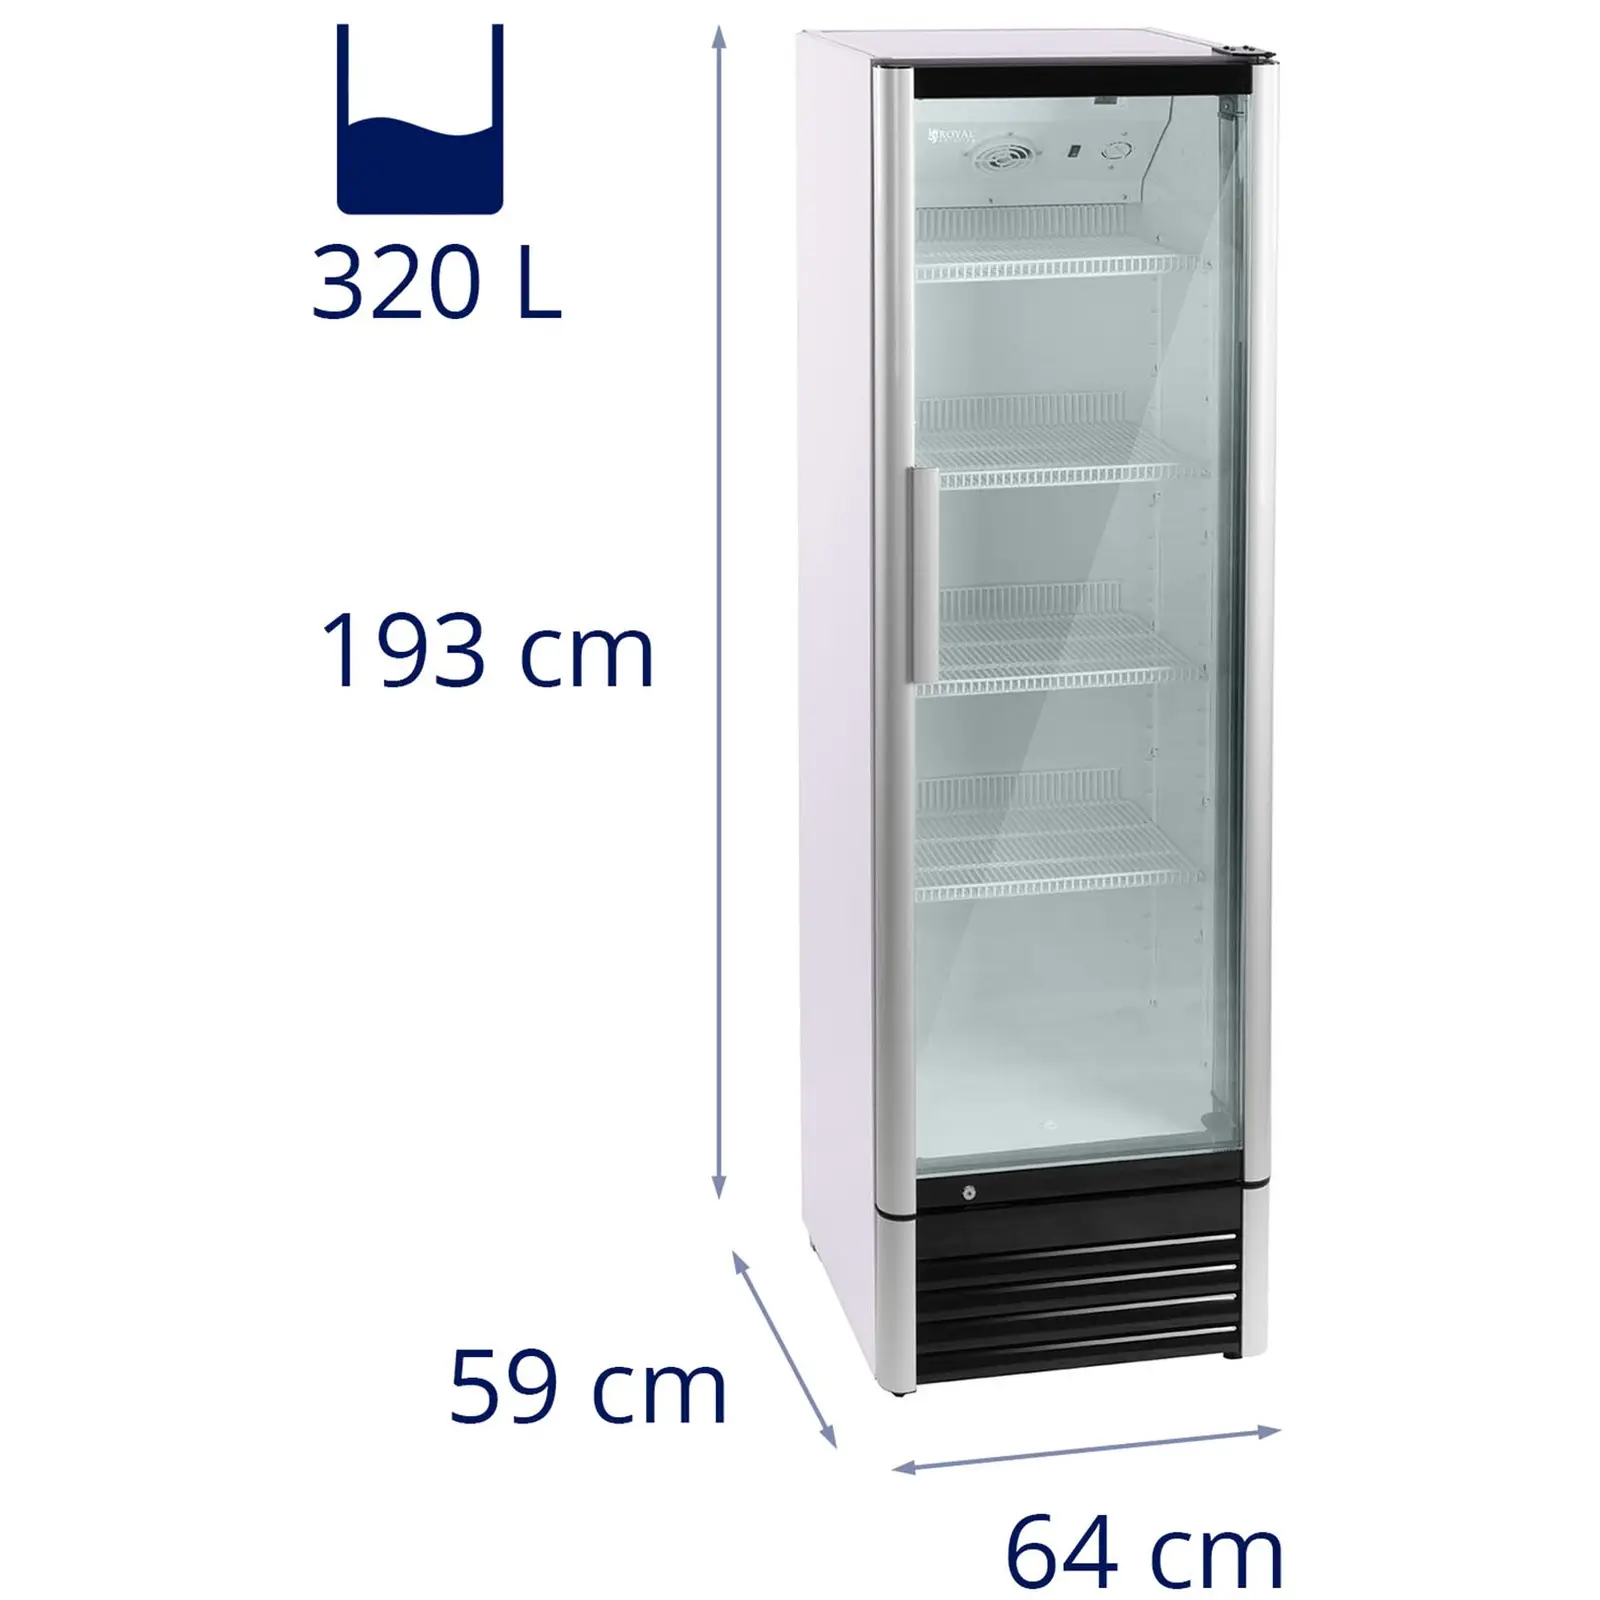 Flaschenkühlschrank - 320 L - LED - Aluminiumrahmen